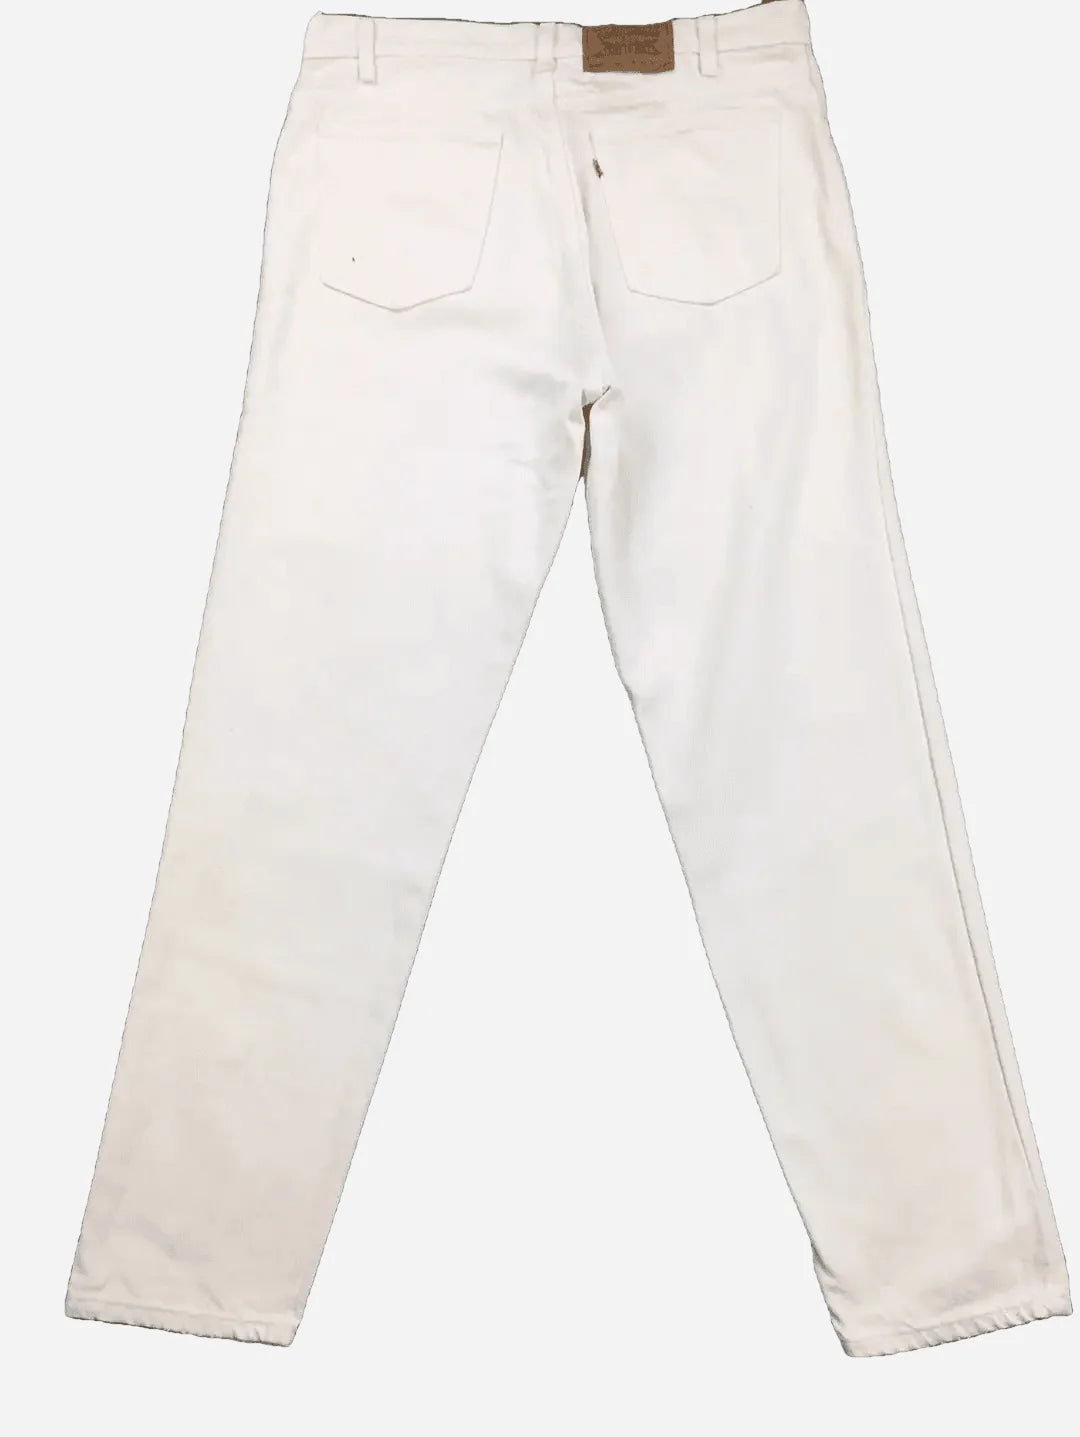 Levi's 550 Jeans 36/32 (XL)